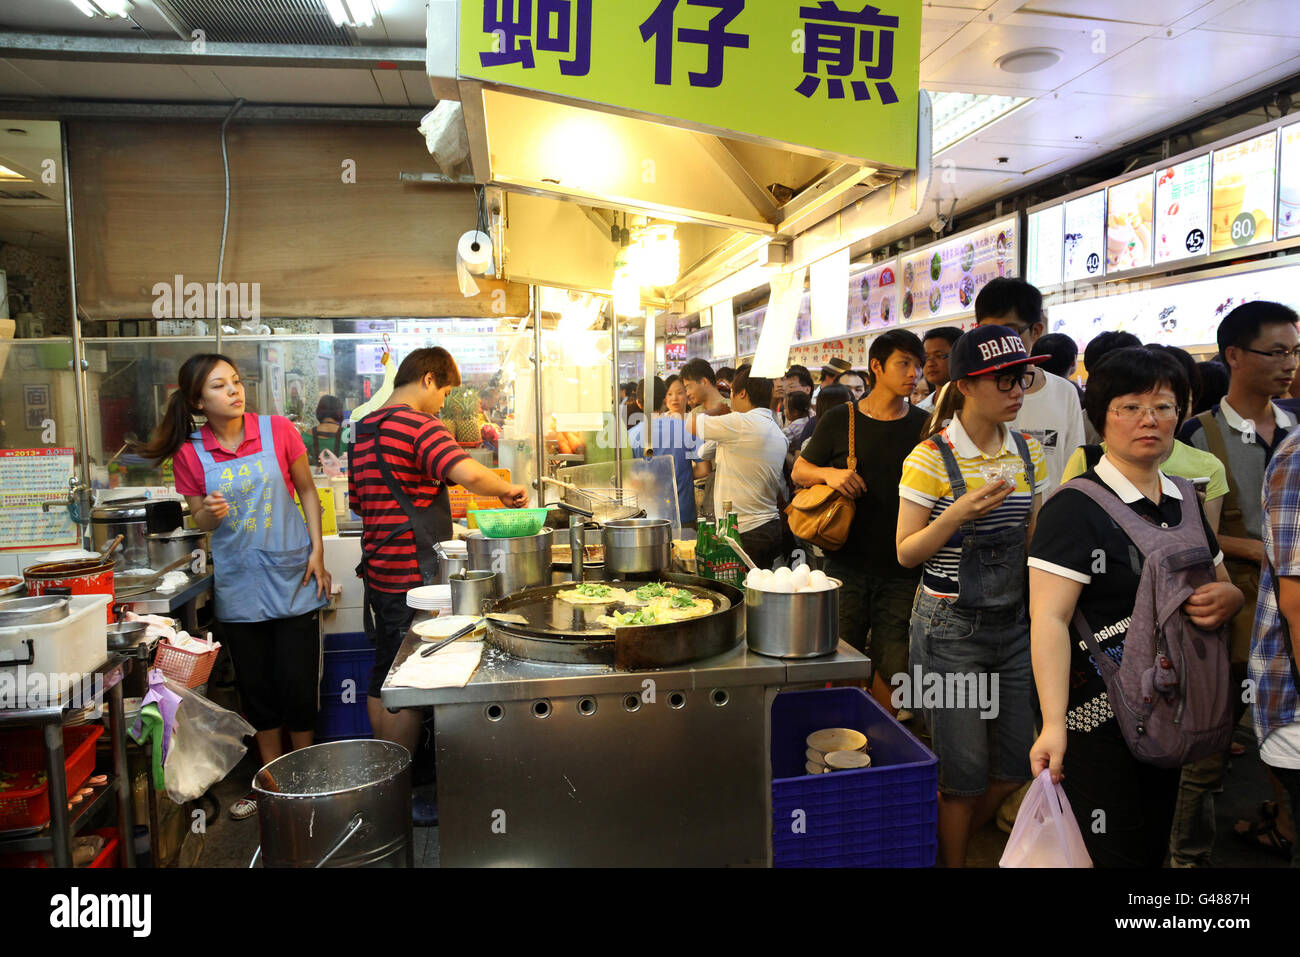 Taipeh, TAIWAN - 14 Juli: Hungrige Massen strömen in der Shilin Night Market Foodcourt in der Shilin District von Taipeh. Stockfoto